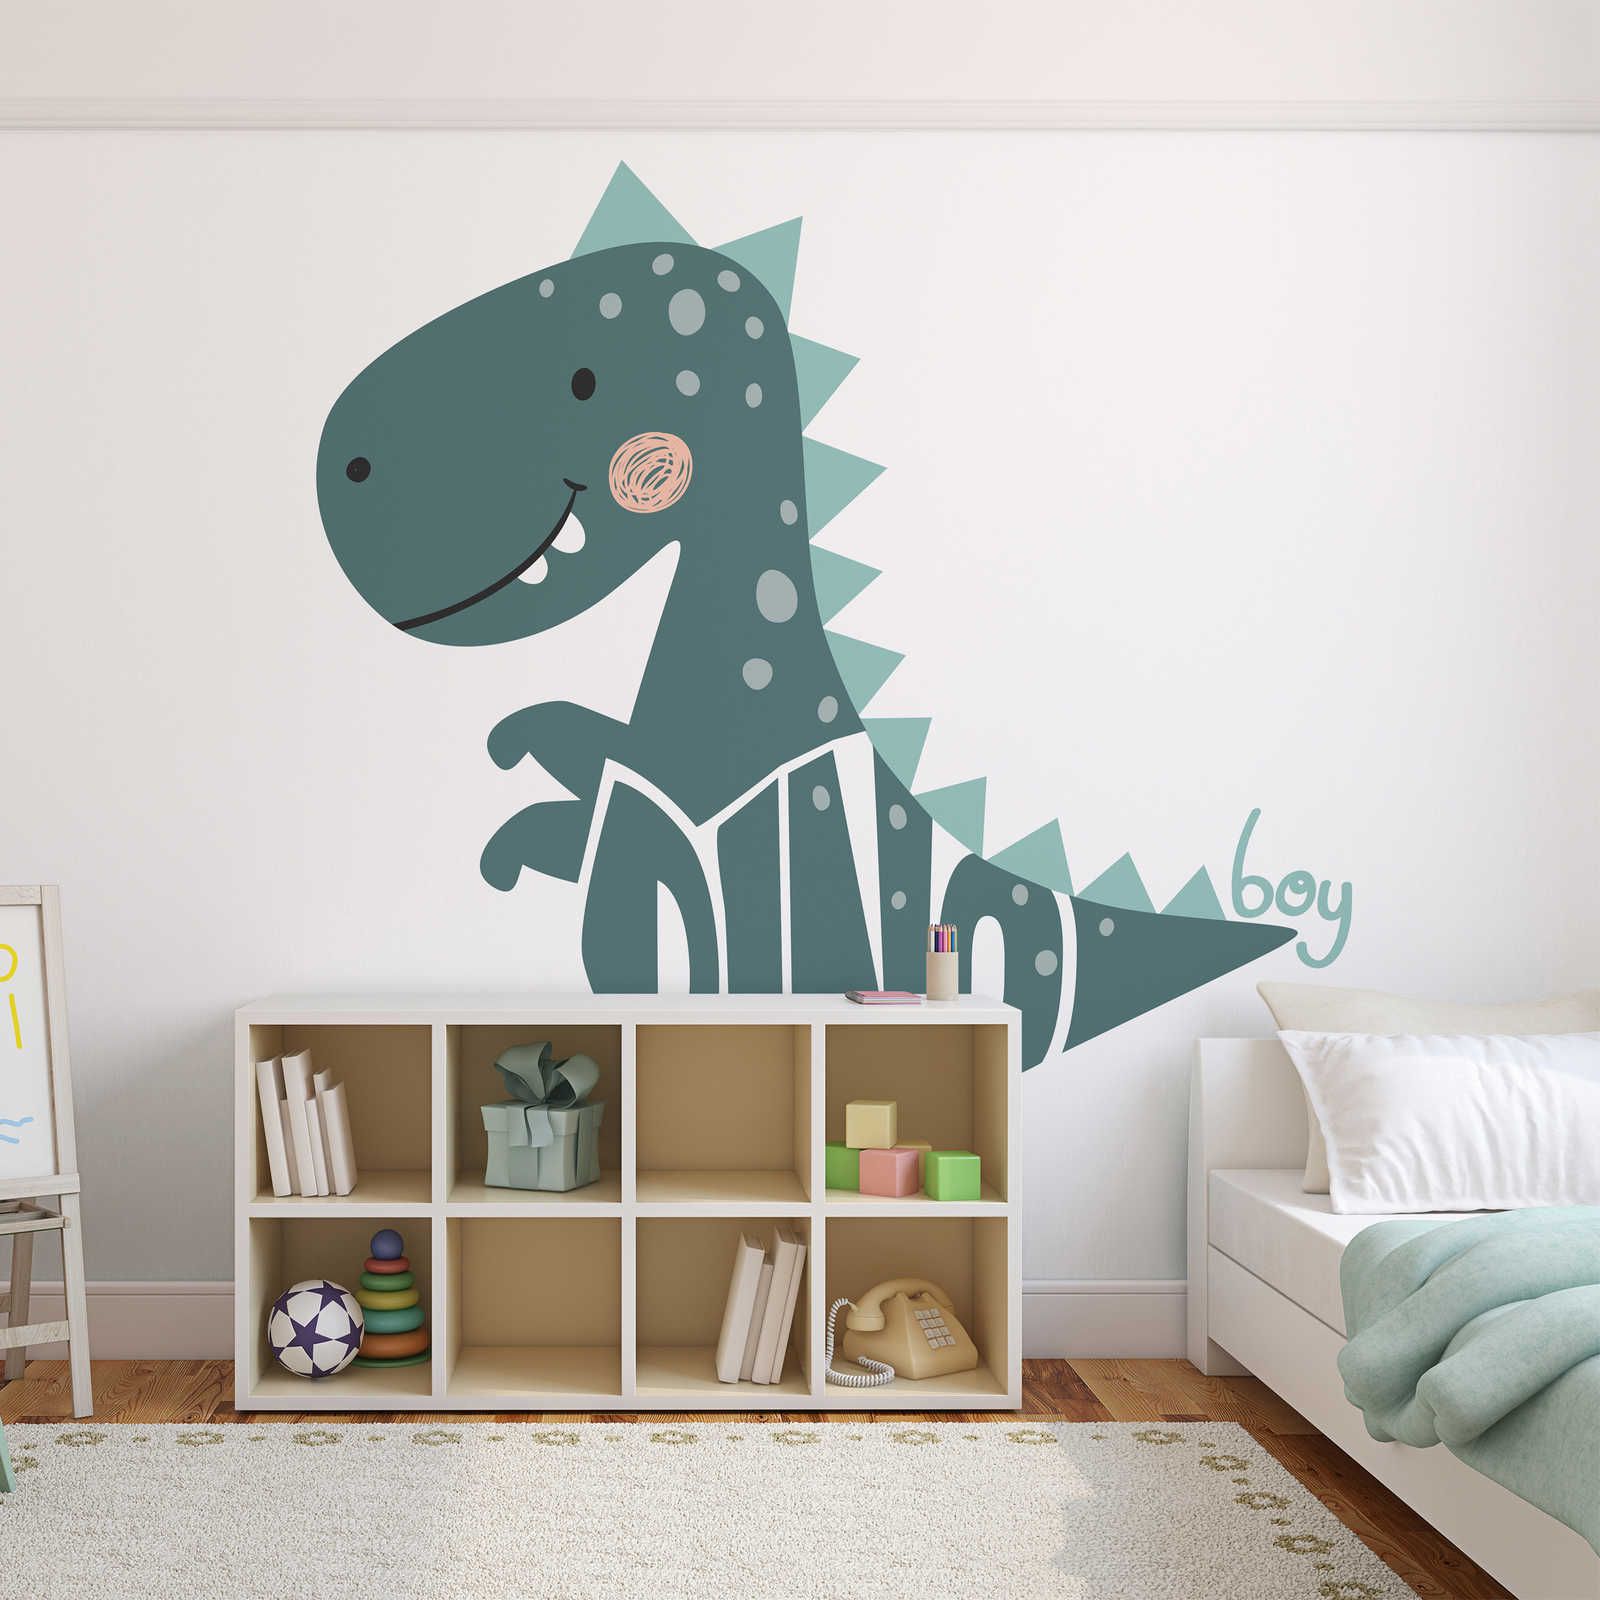 Papel pintable Habitación Infantil con Dinosaurio - Material sin tejer liso y opaco
